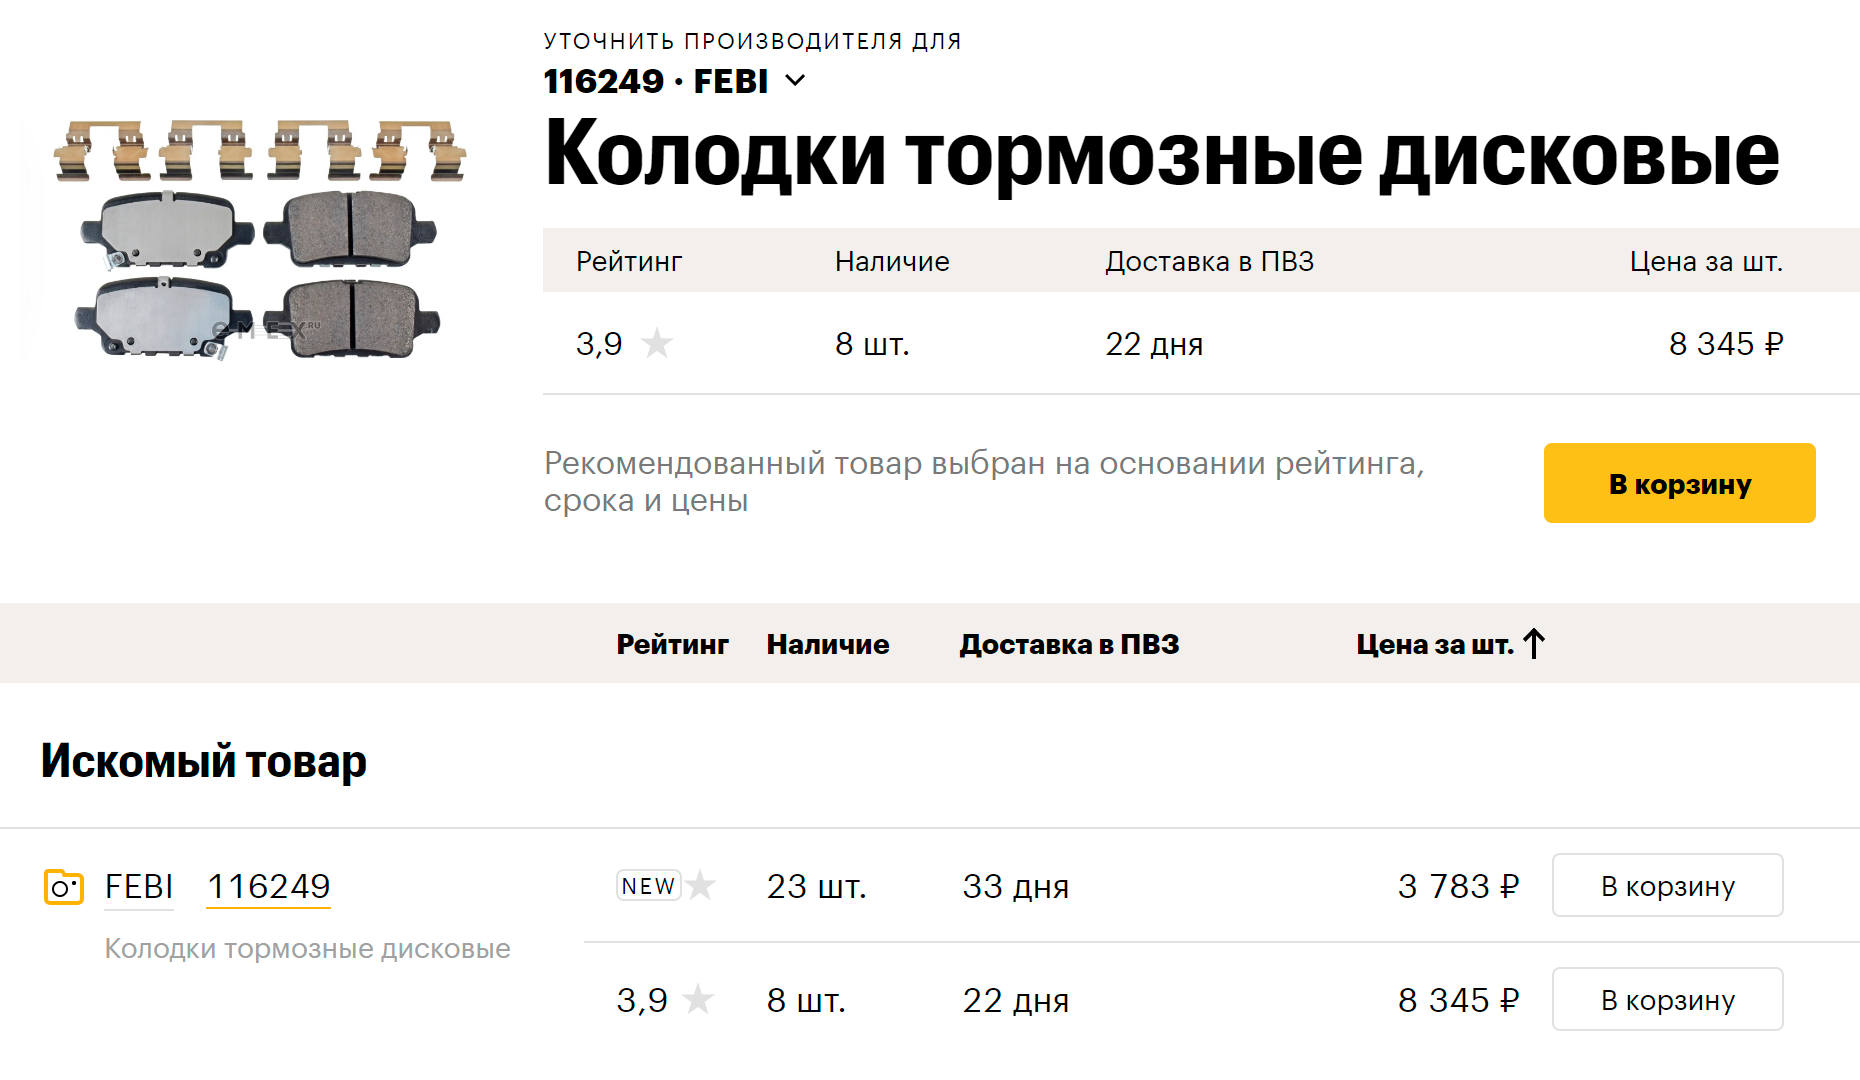 Колодки в каталоге российского сайта запчастей. Источник: emex.ru